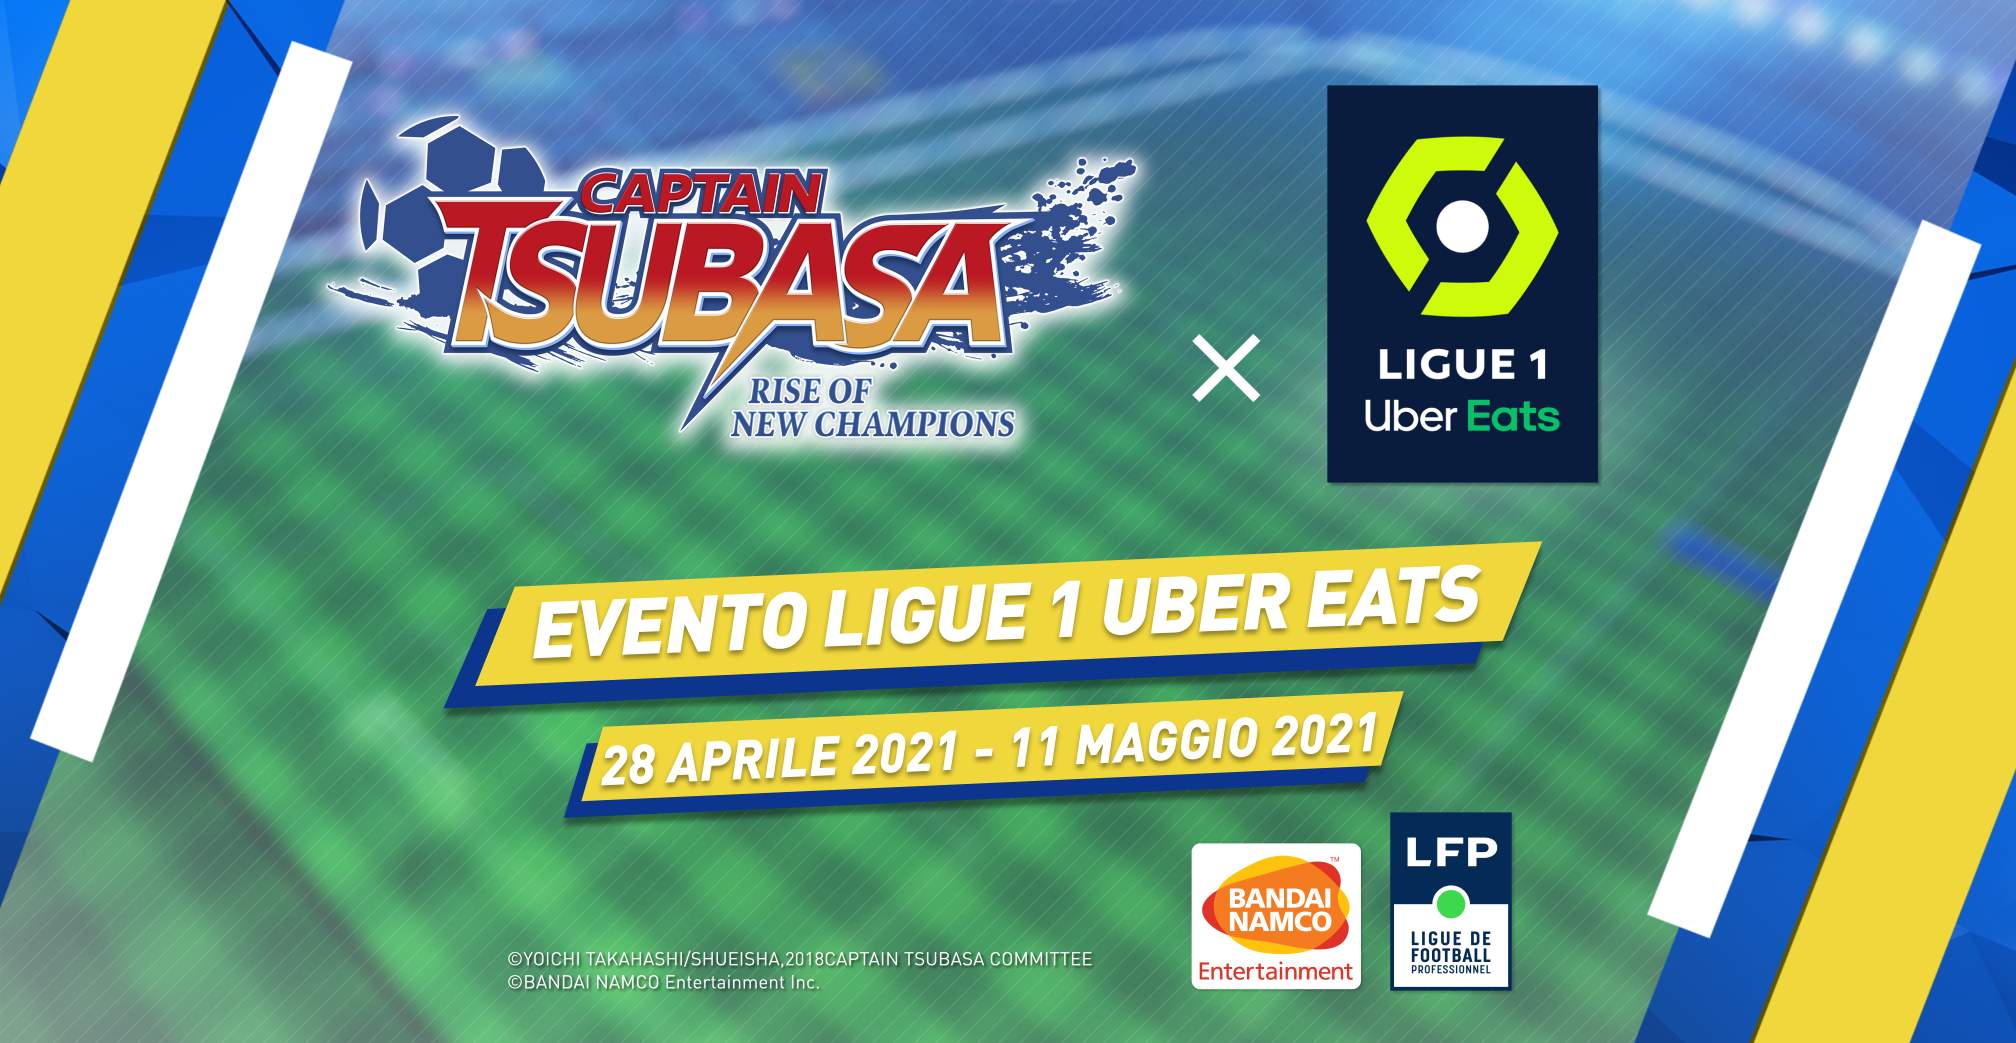 Le divise della Ligue 1 Uber Eats arrivano in Captain Tsubasa: Rise of New Champions